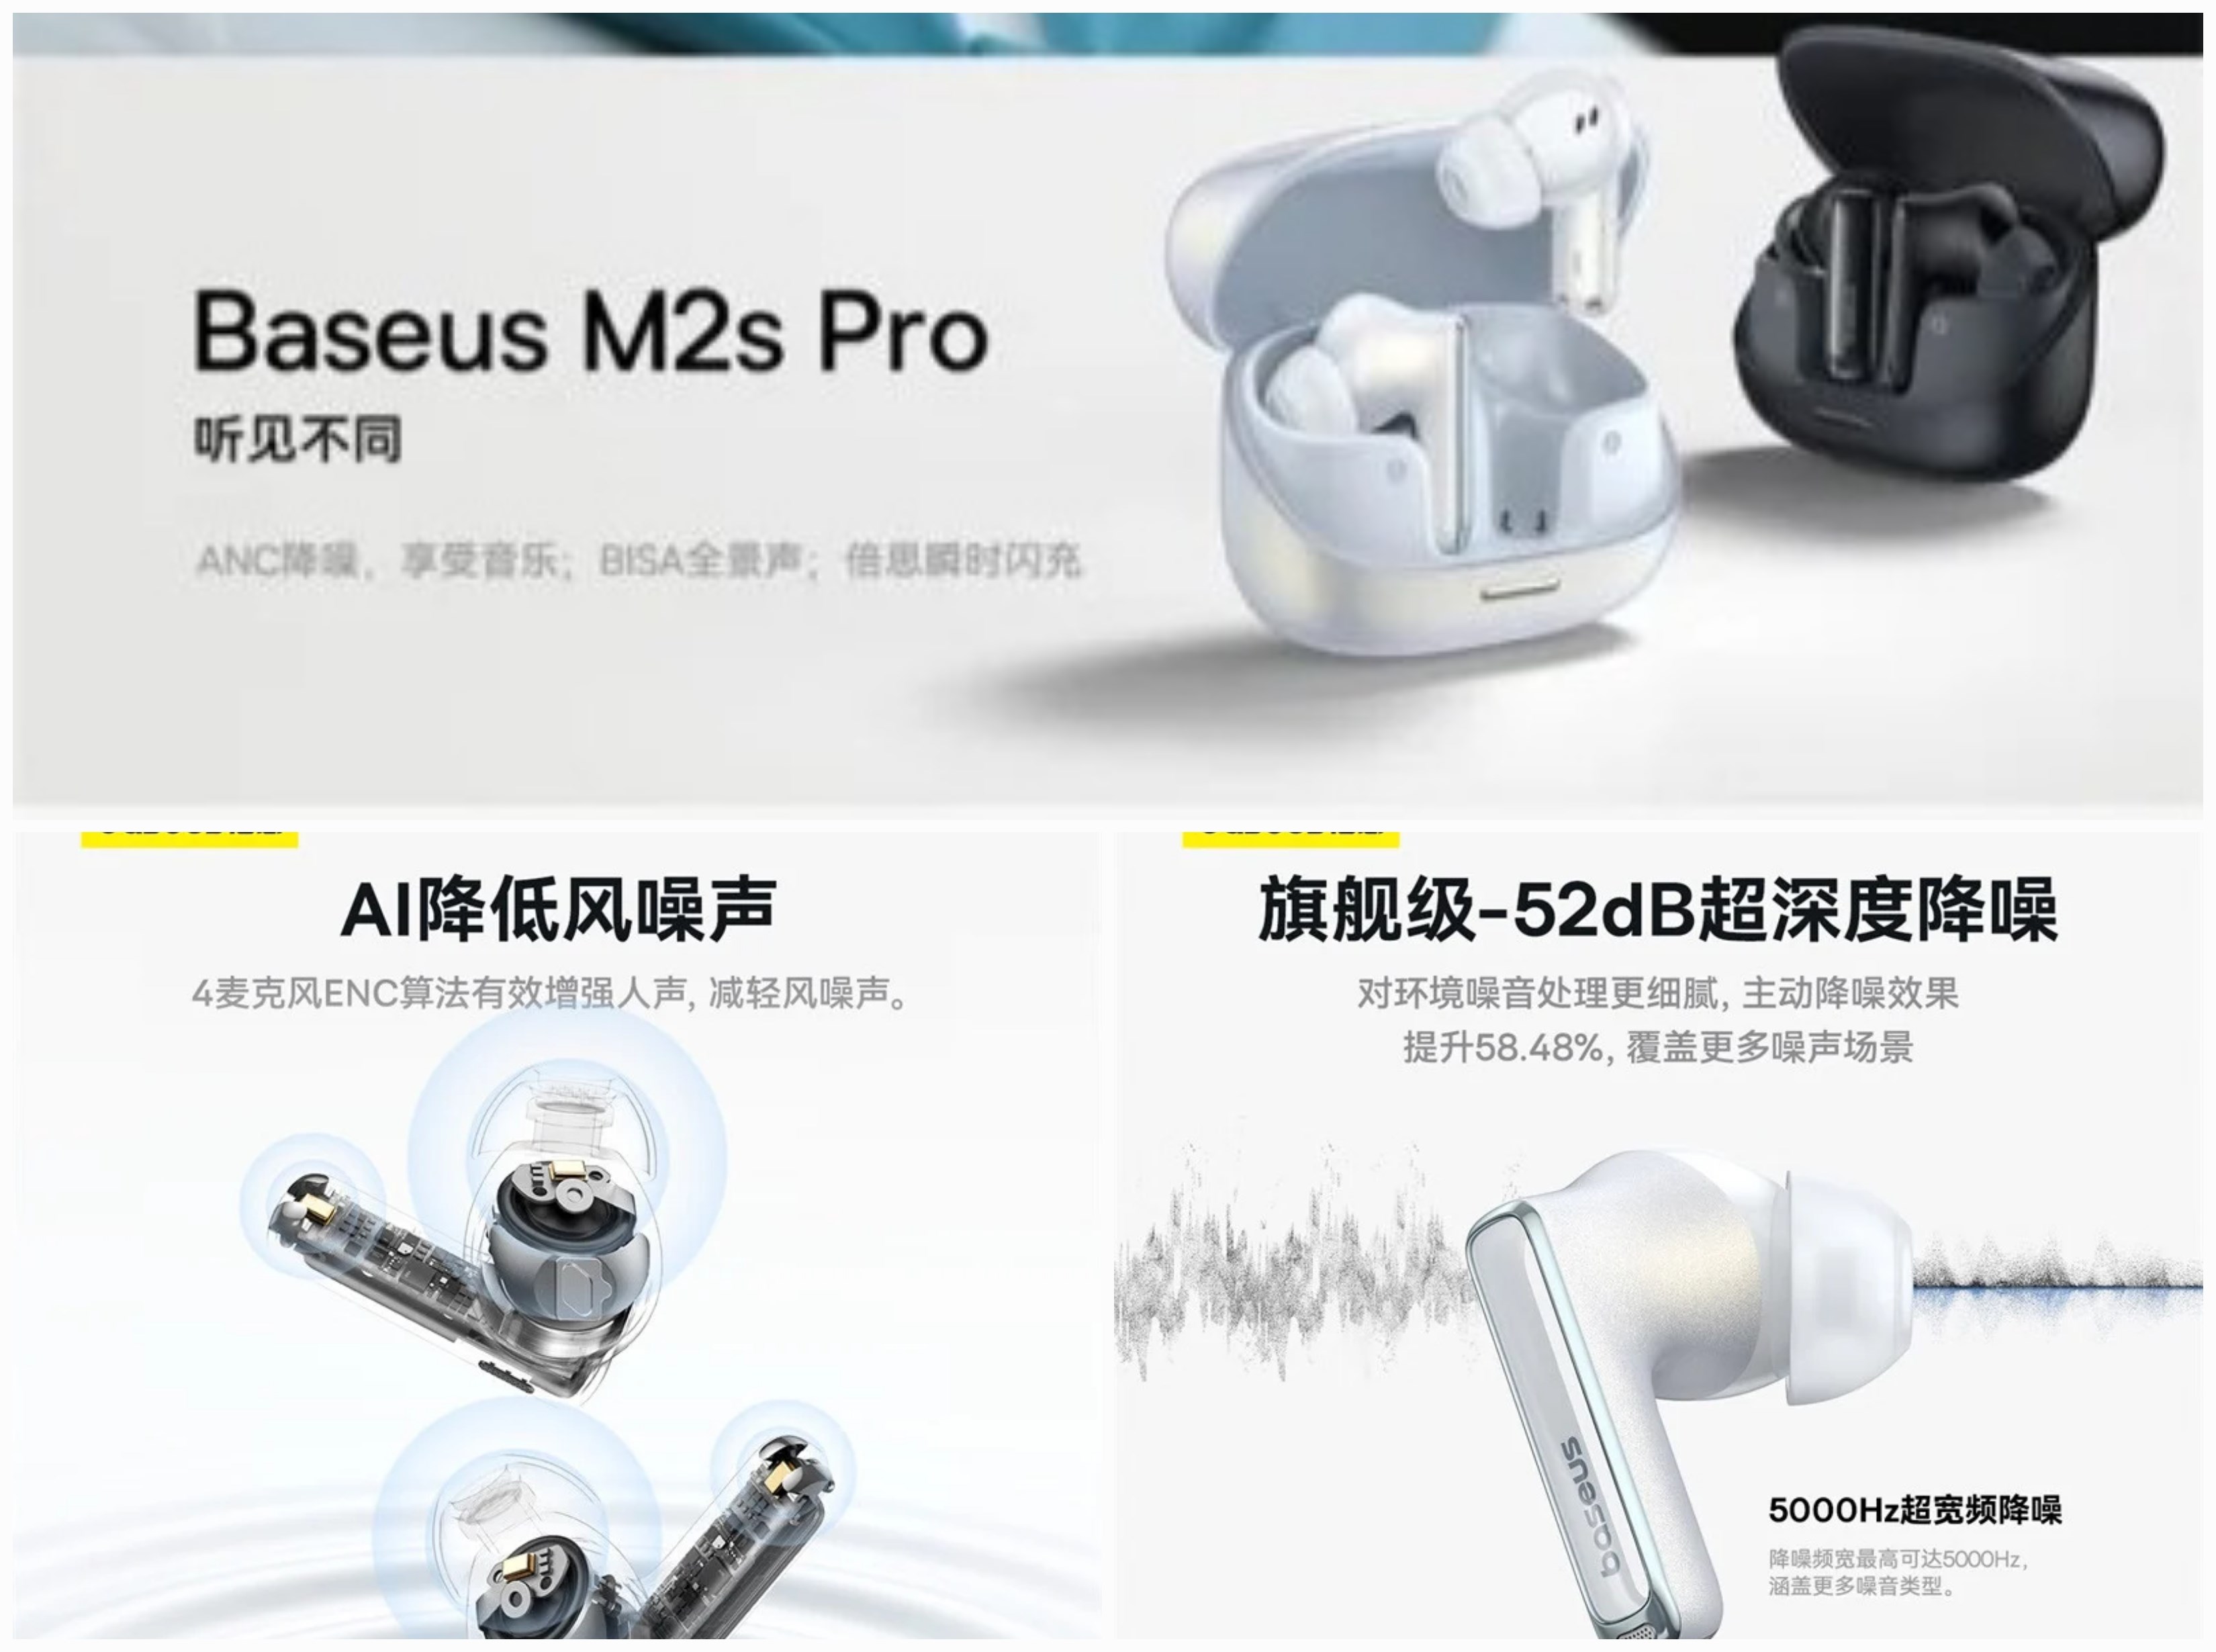 Baseus M2s Pro